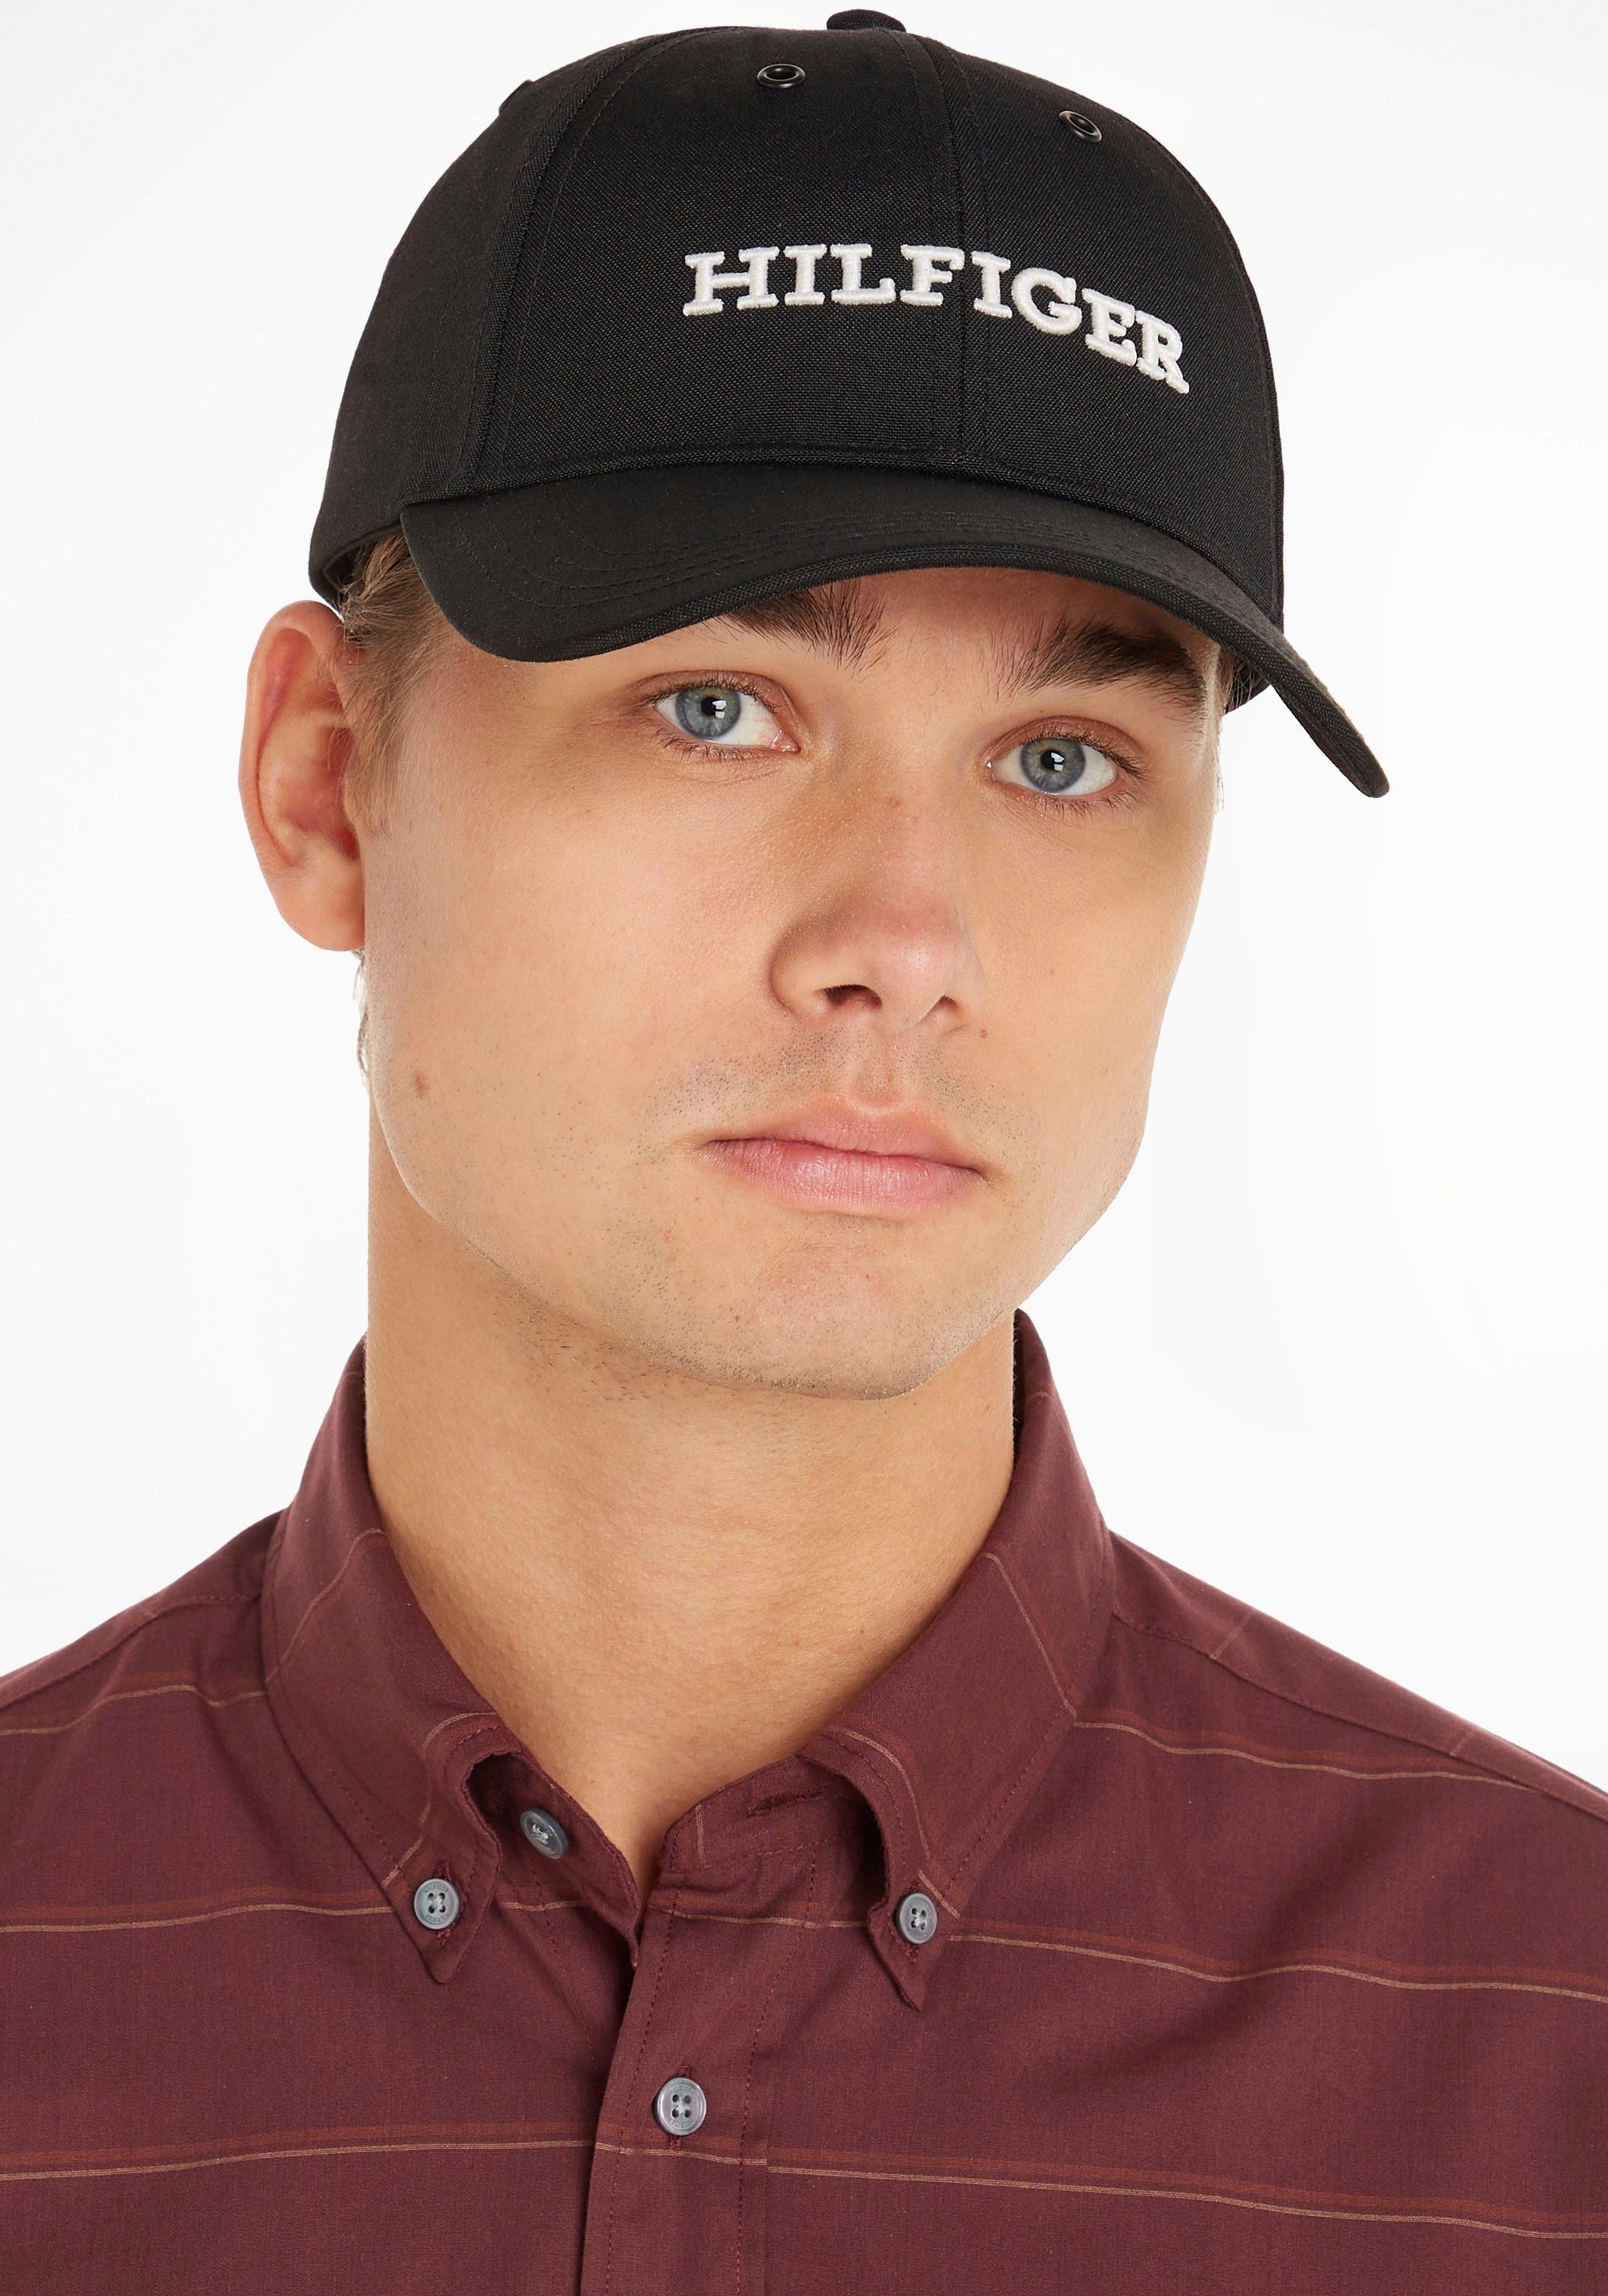 Tommy Hilfiger Black Baseball Hilfiger Logo CAP vorn Stickerei HILFIGER Cap großer mit